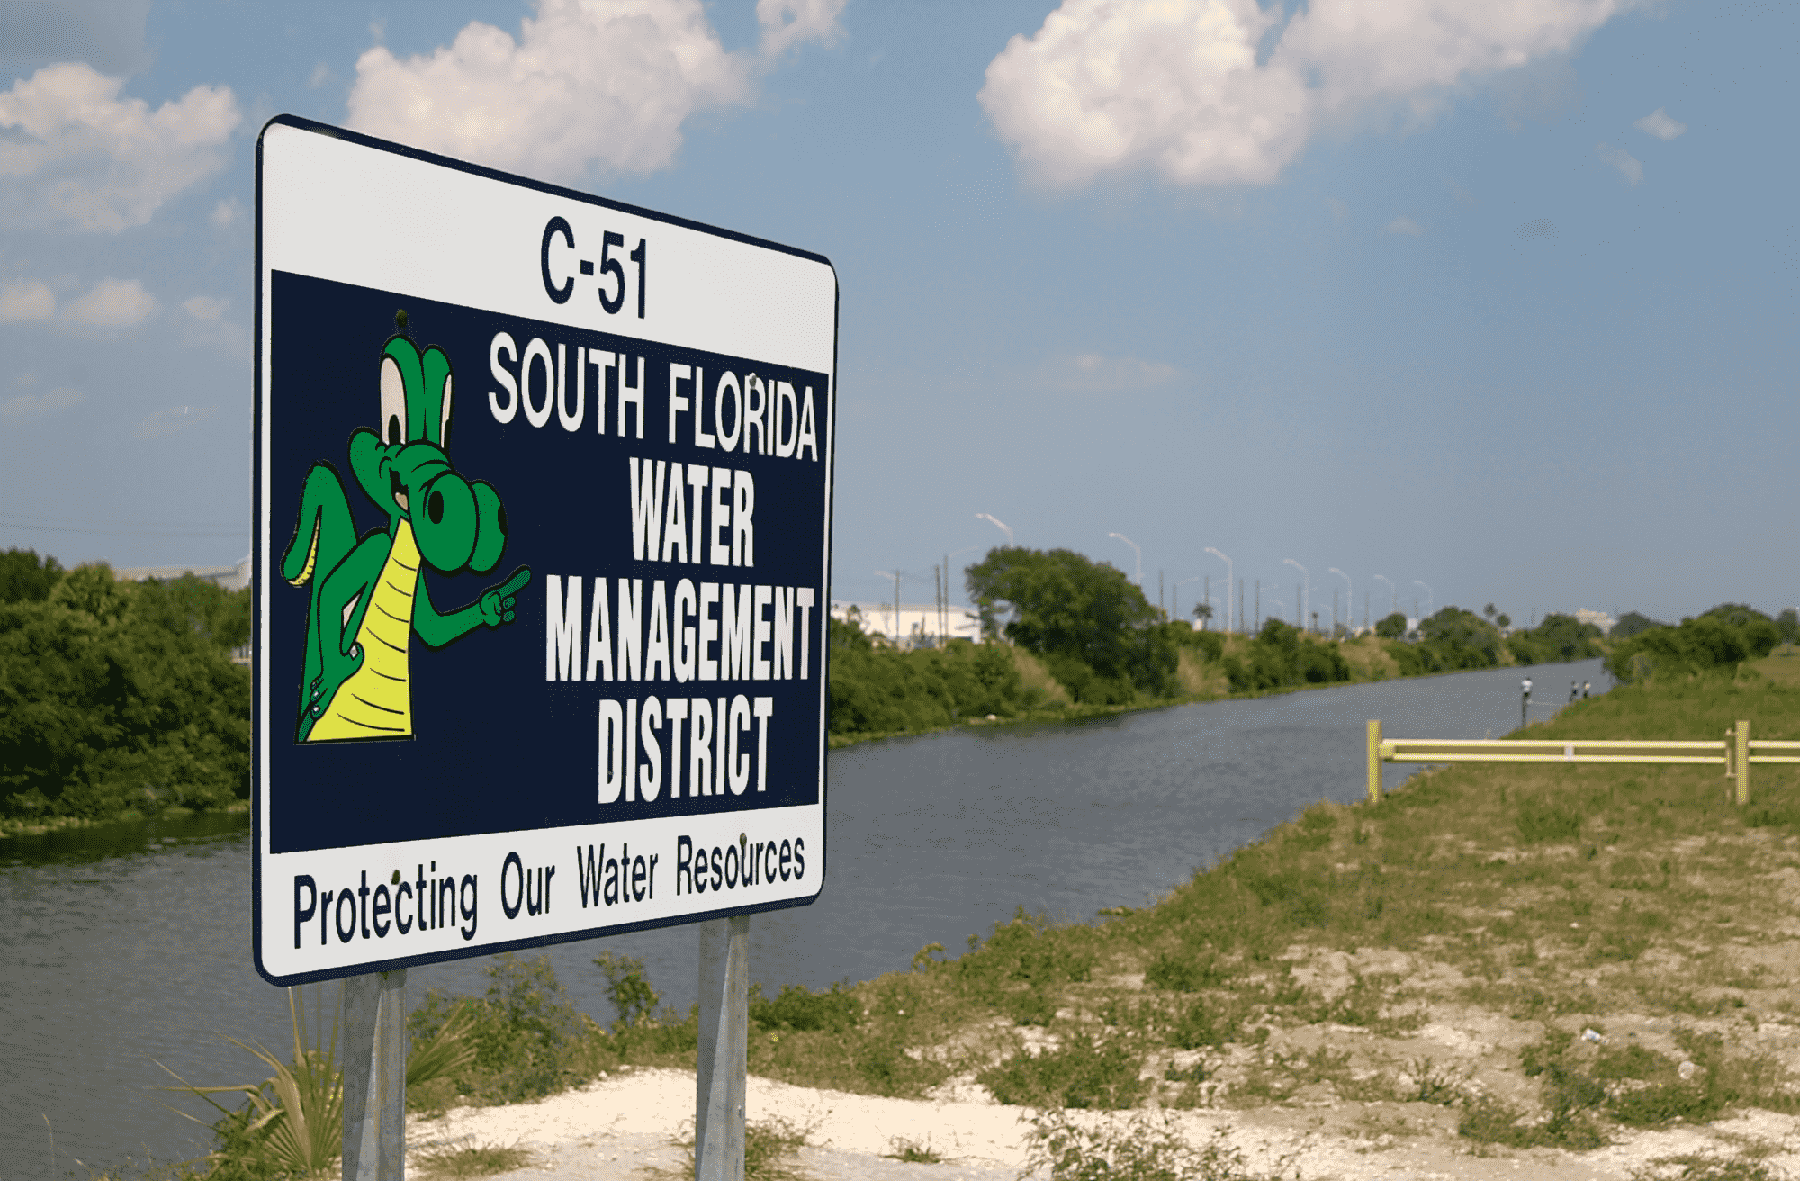 Regierungsbild eines Zeichens des South Florida Water Management District